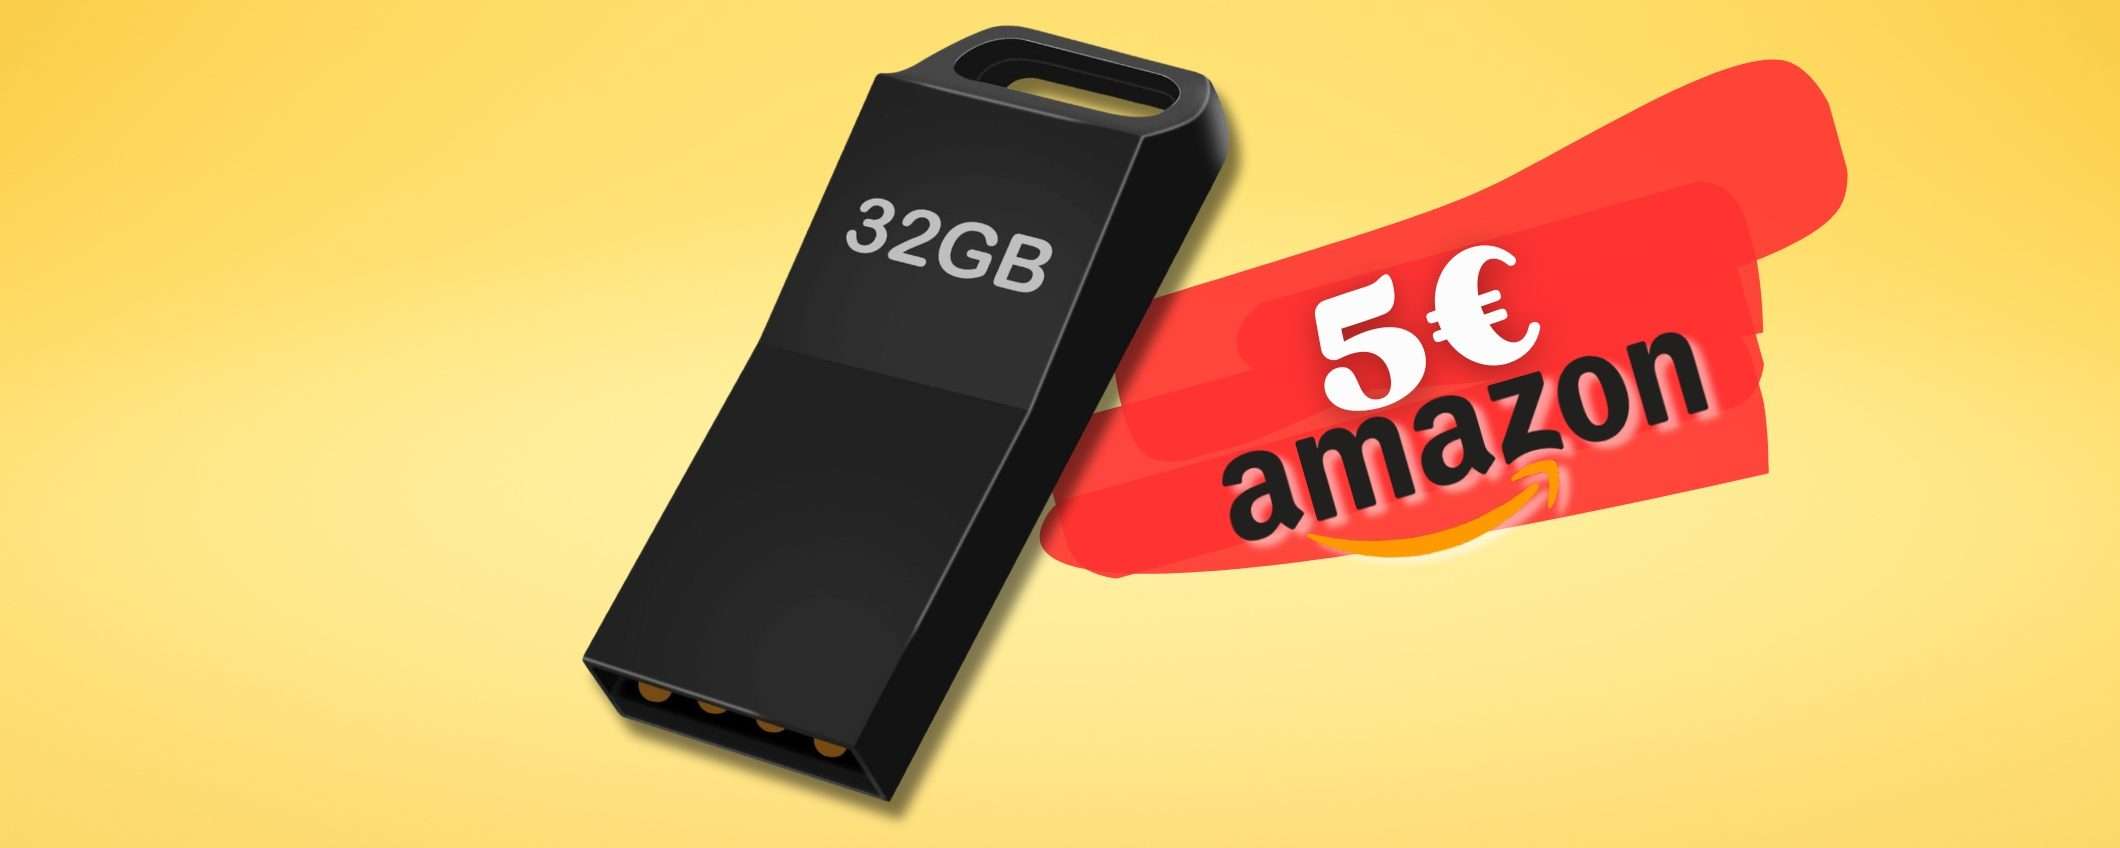 32GB di spazio su chiavetta USB compatta in metallo a soli 5€